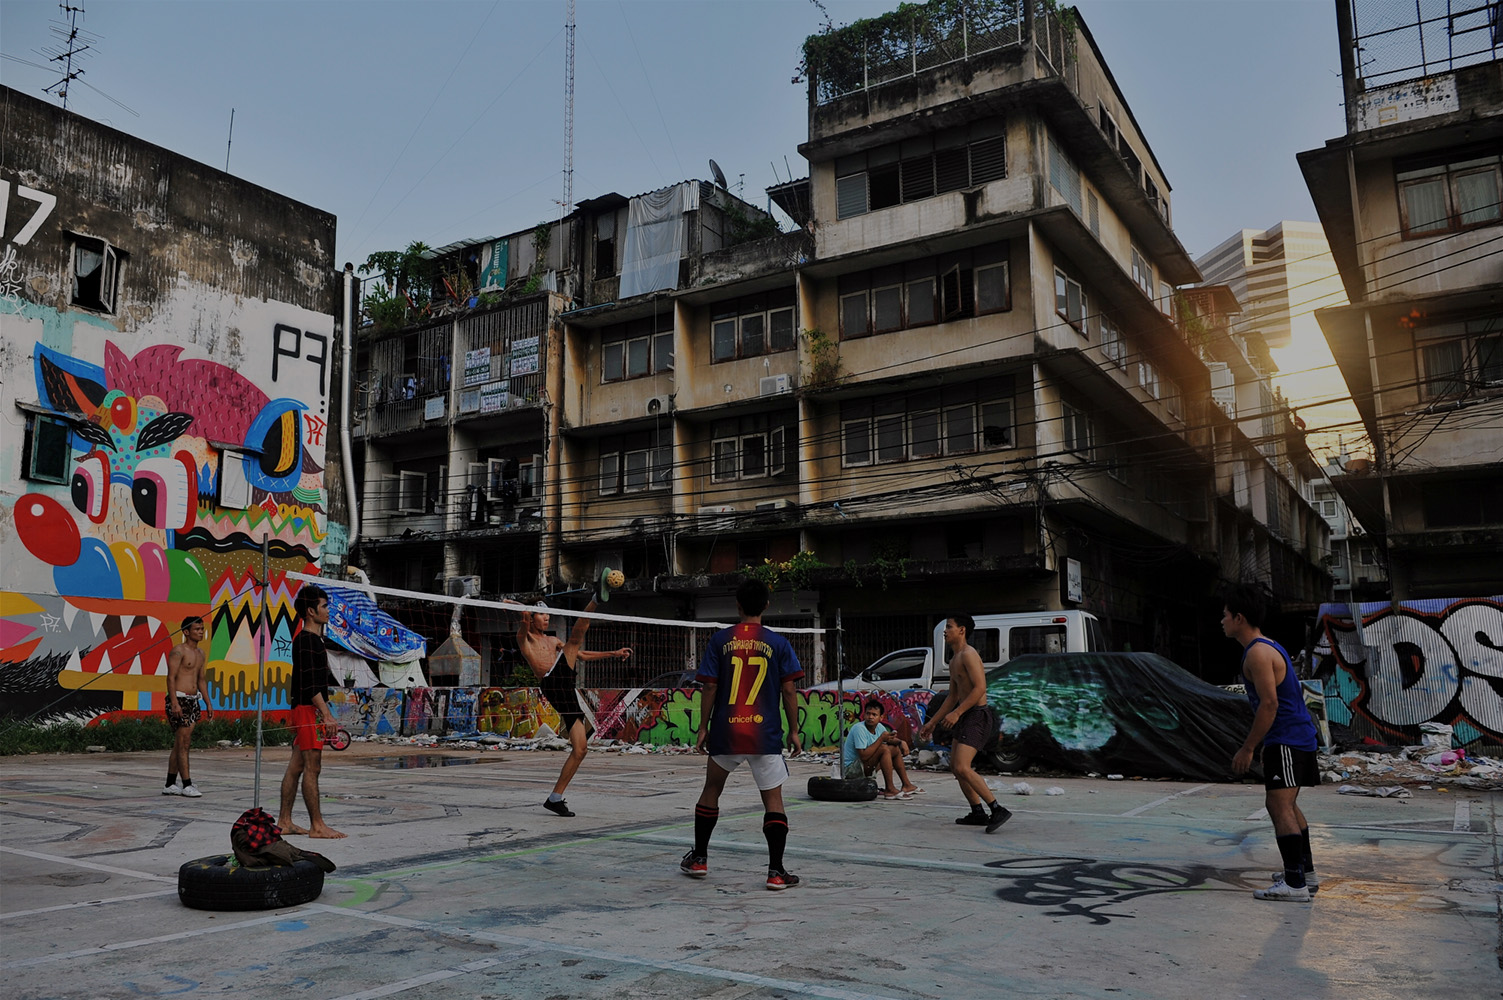 Jouer au sepak takraw dans la rue